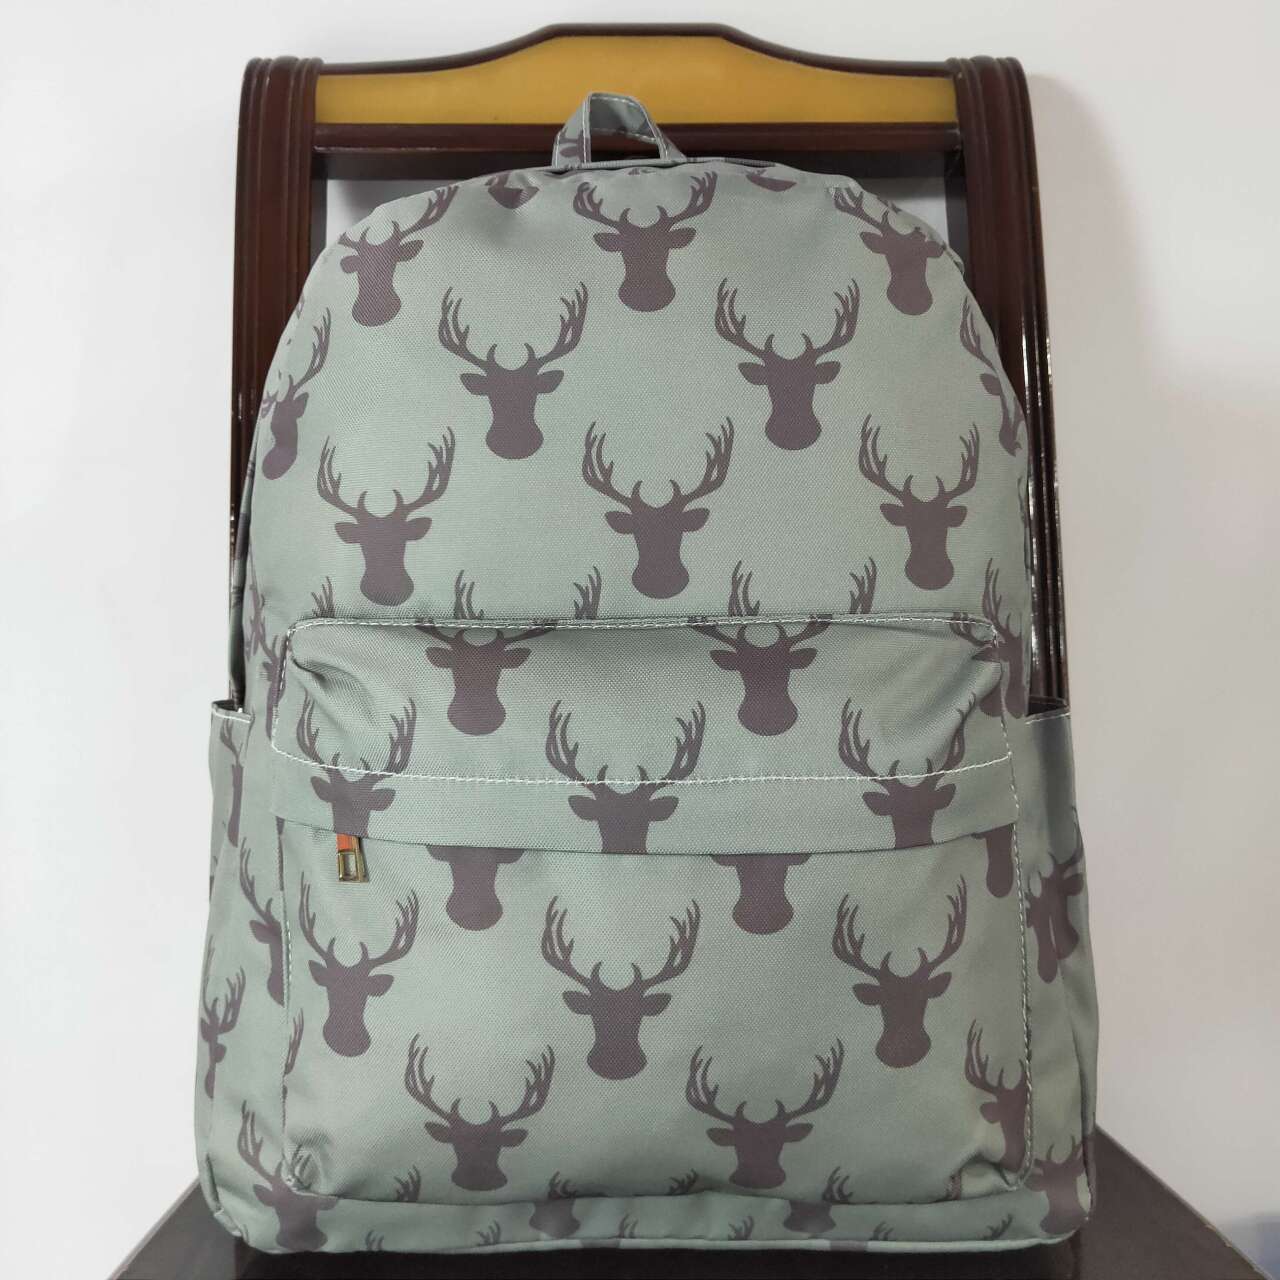 BA0171  Deer antler army green backpack